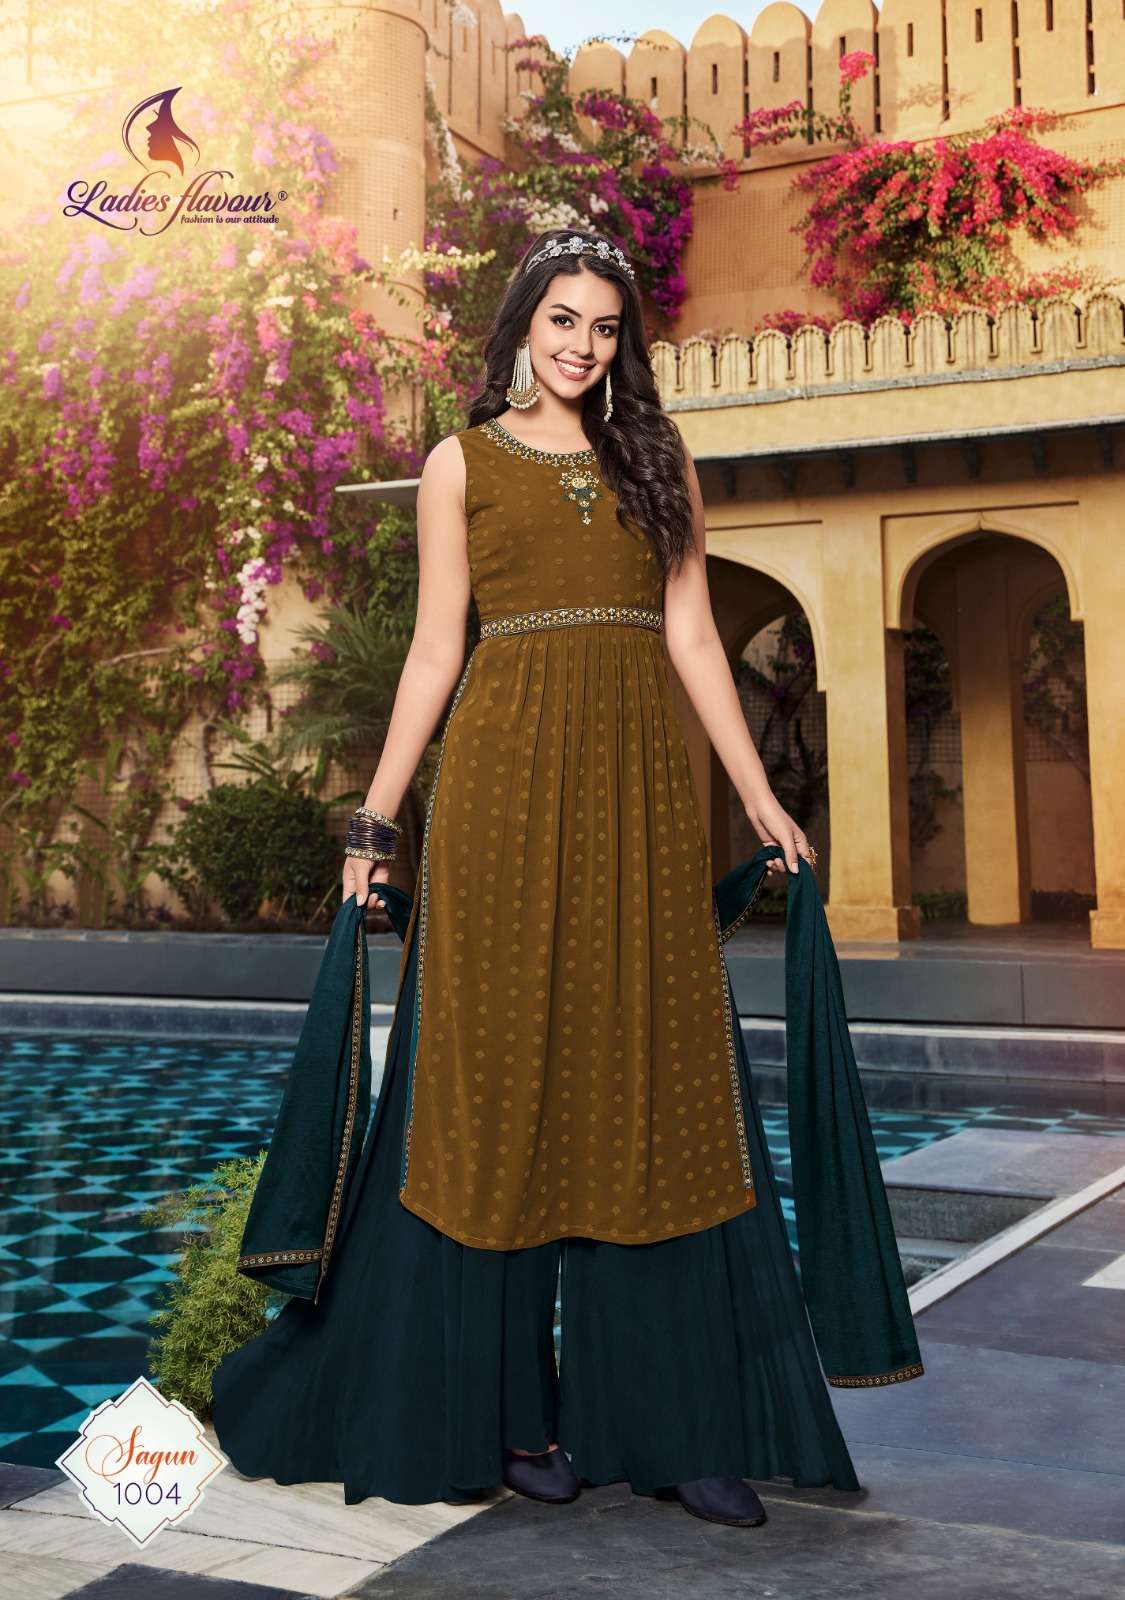 ladies flavour sagun 1001-1004 series exclusive desrigner dress for women latest collection  